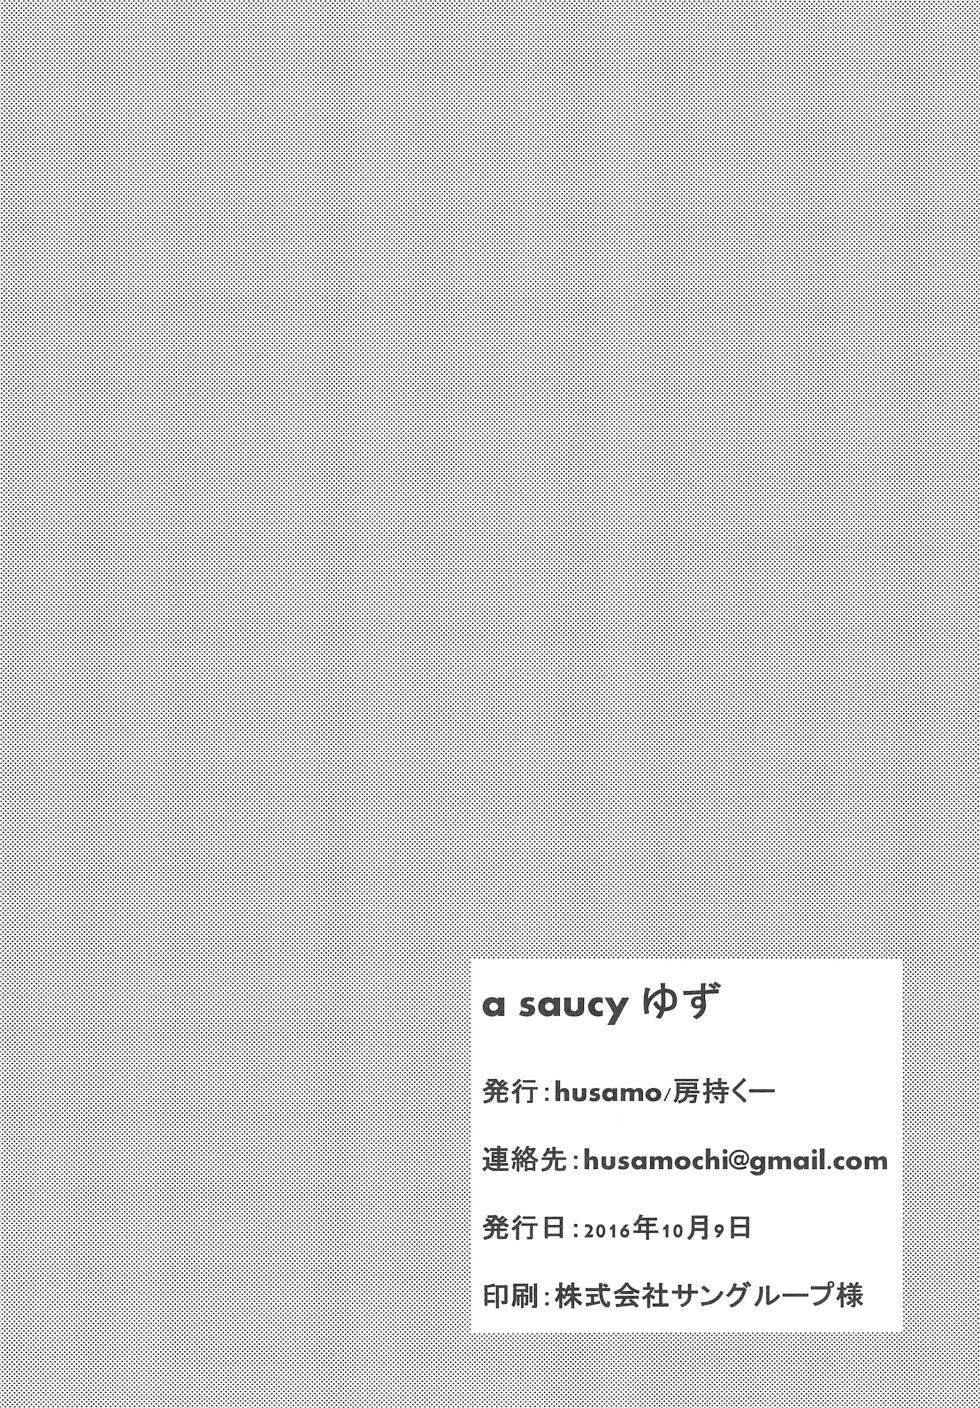 [husamochikuu (husamo)] a saucy yuzu - Page 20